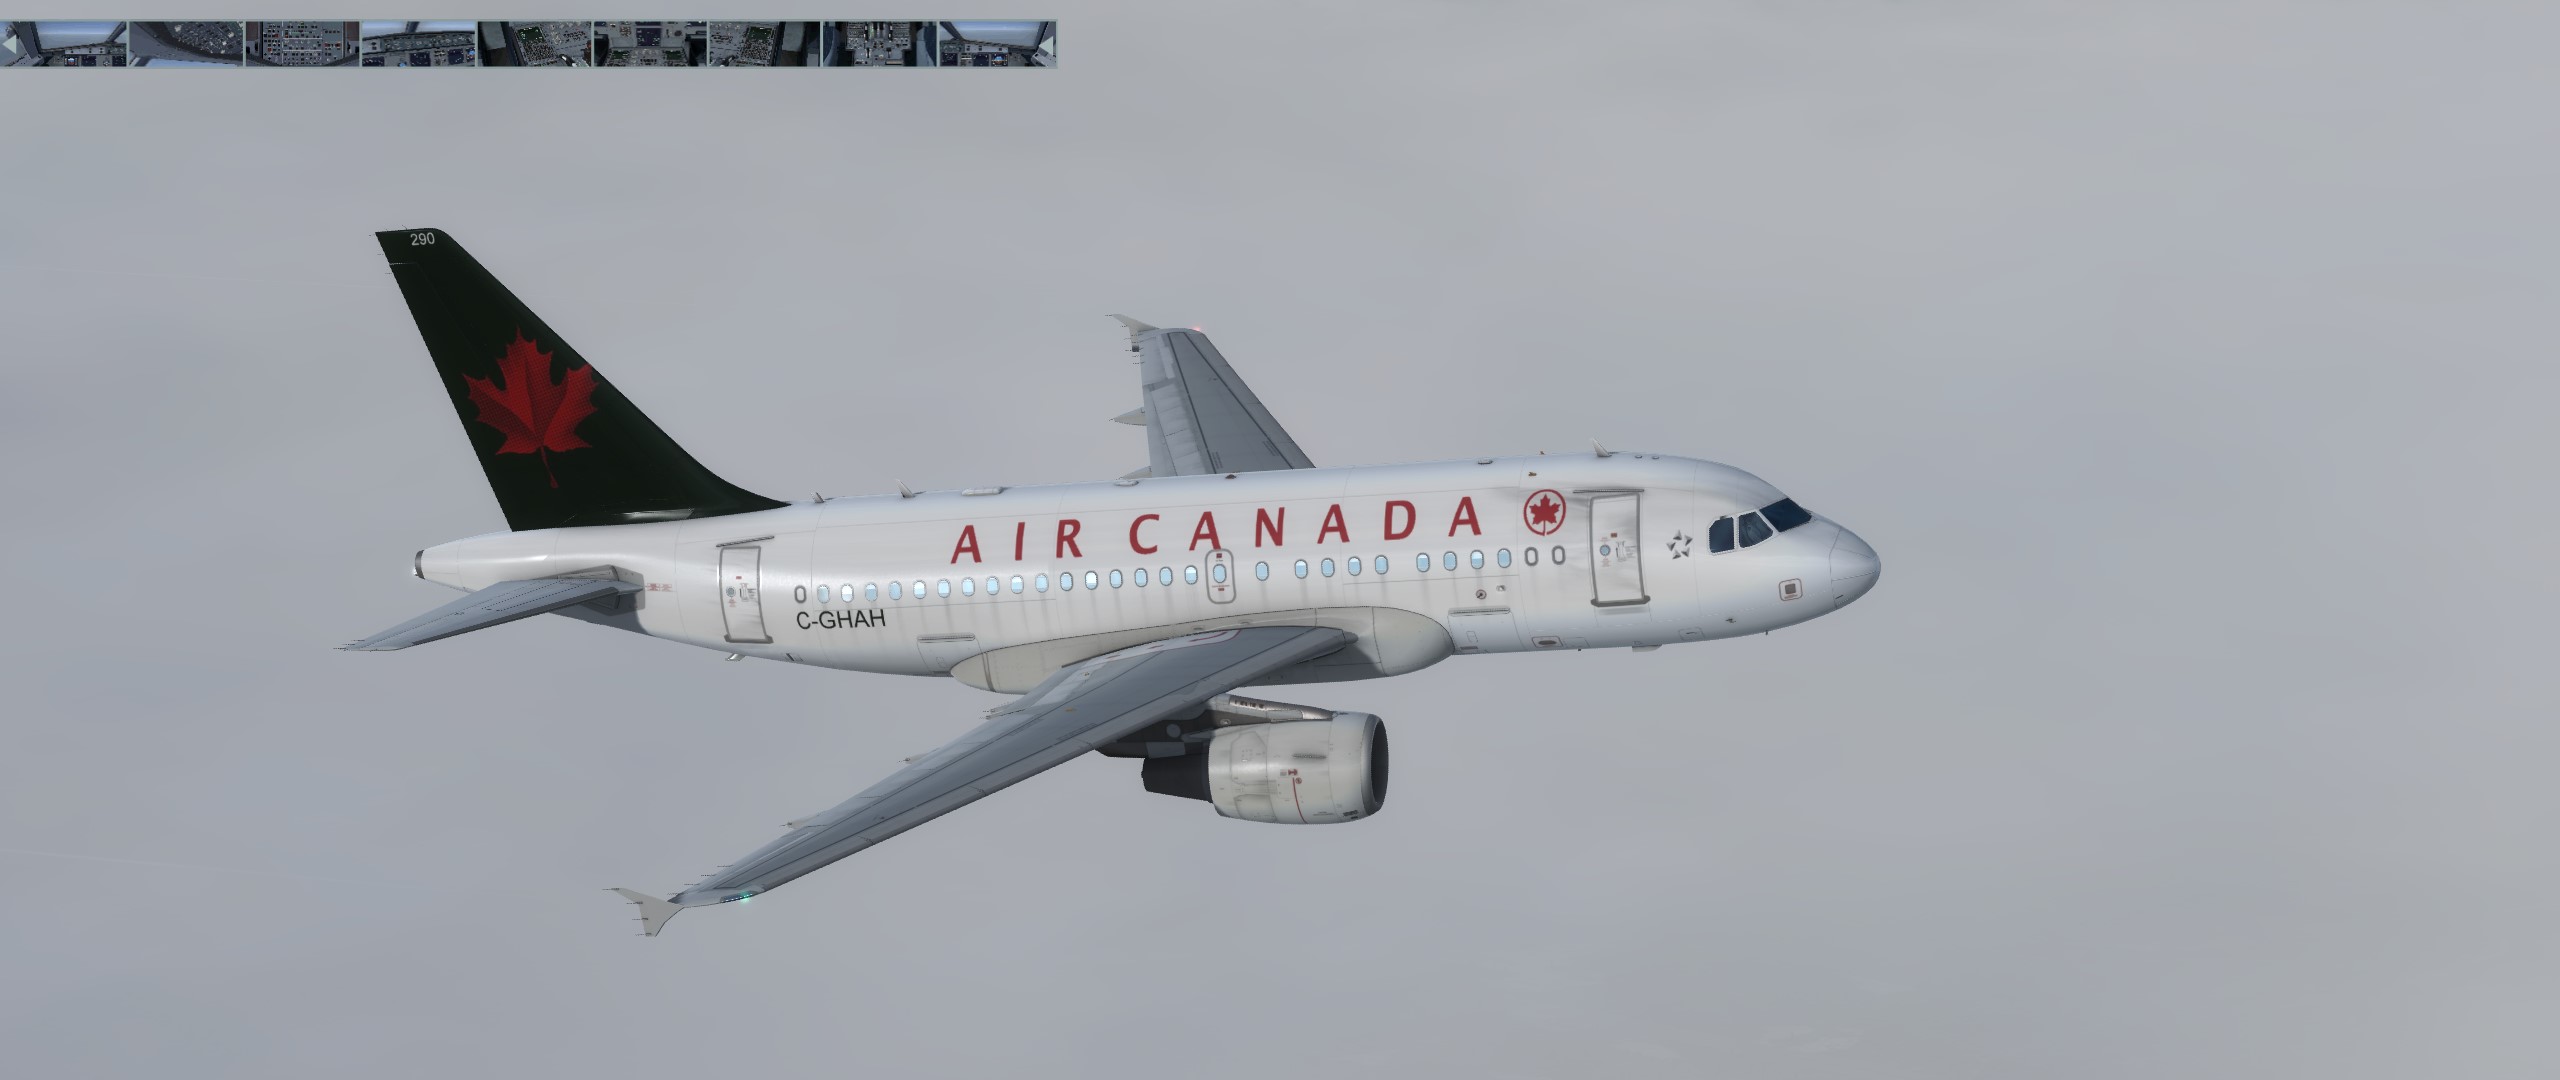 Air Canada A318 1990 Livery